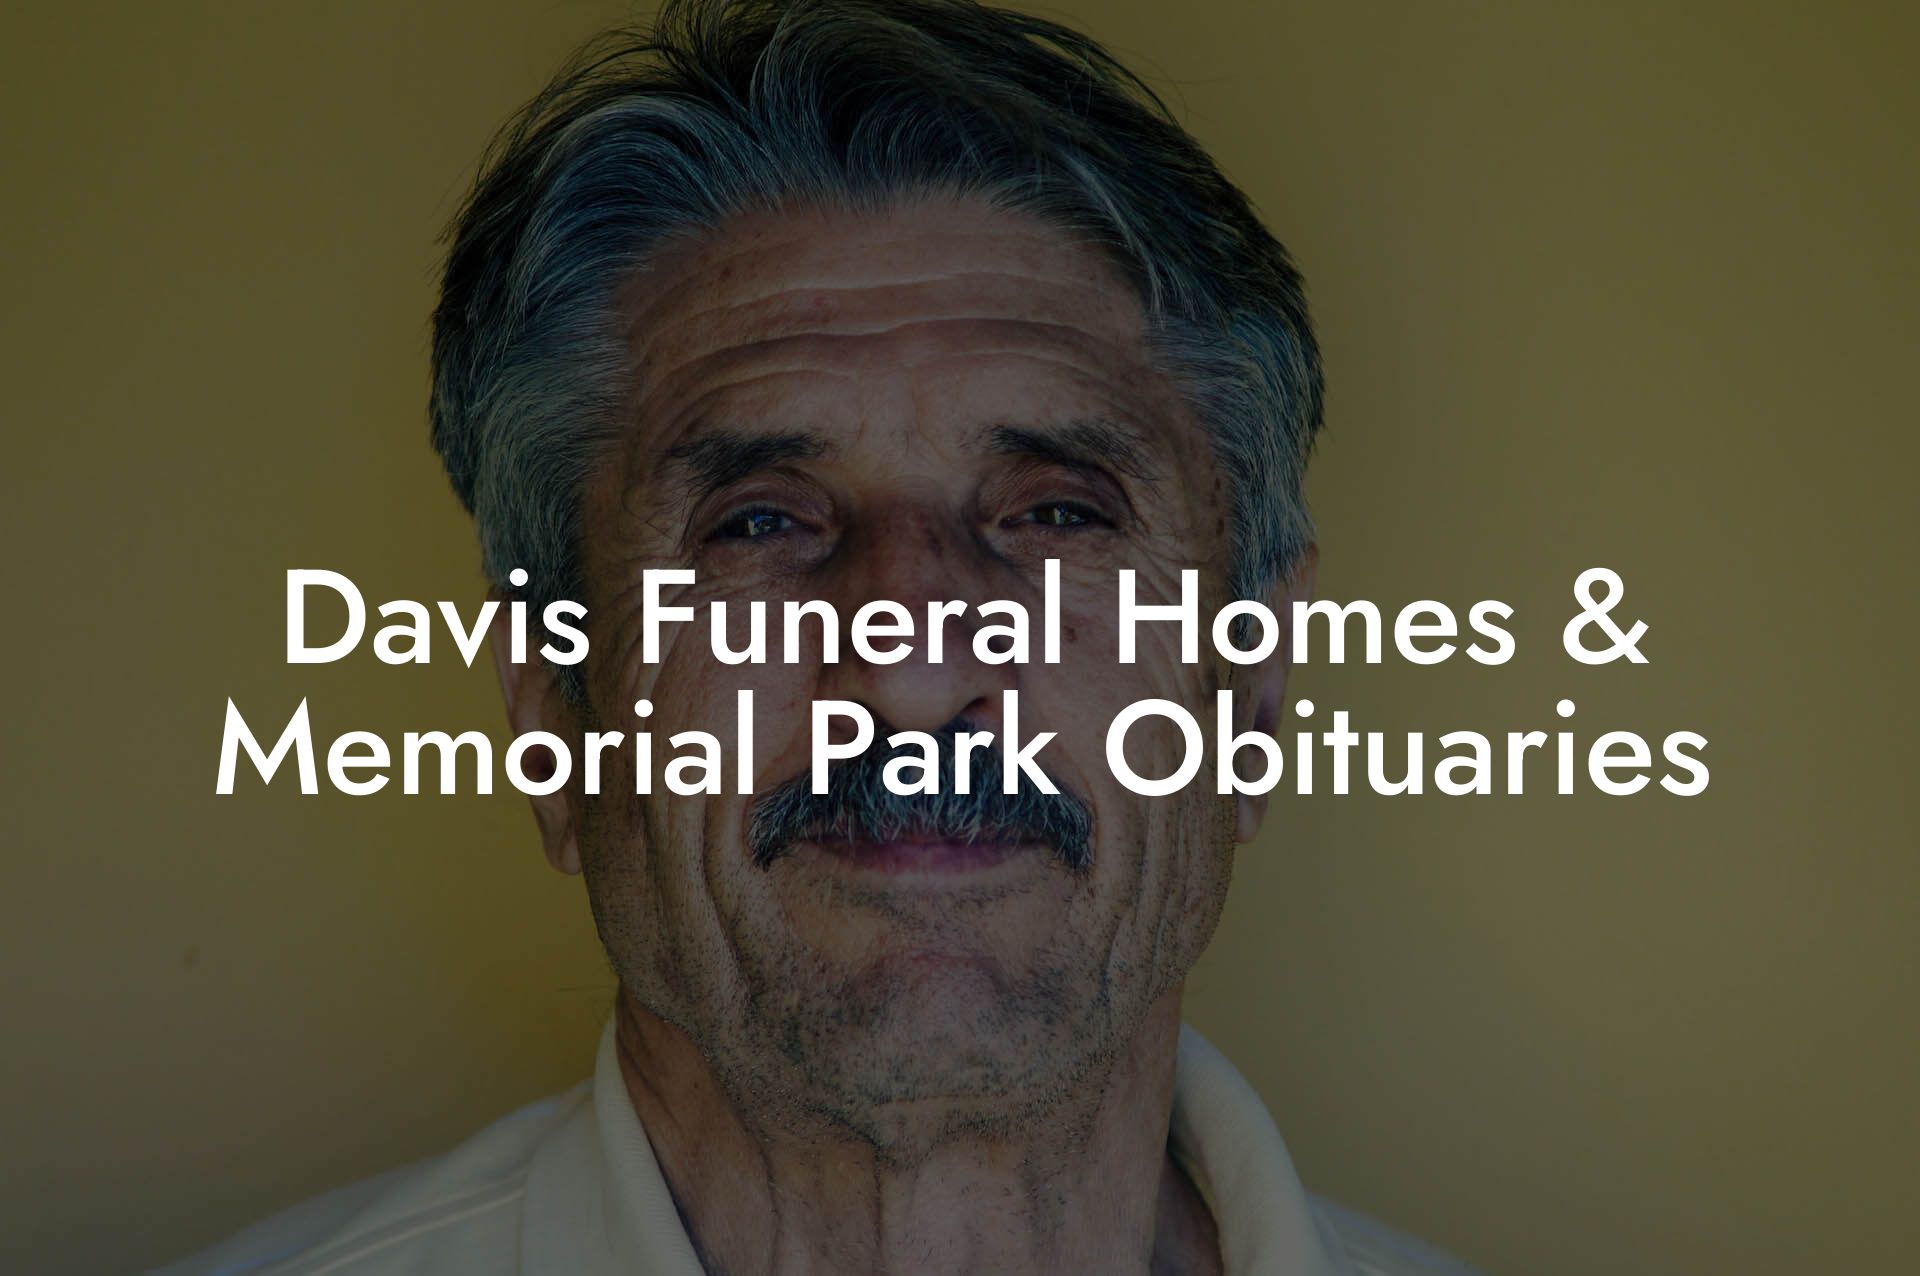 Davis Funeral Homes & Memorial Park Obituaries